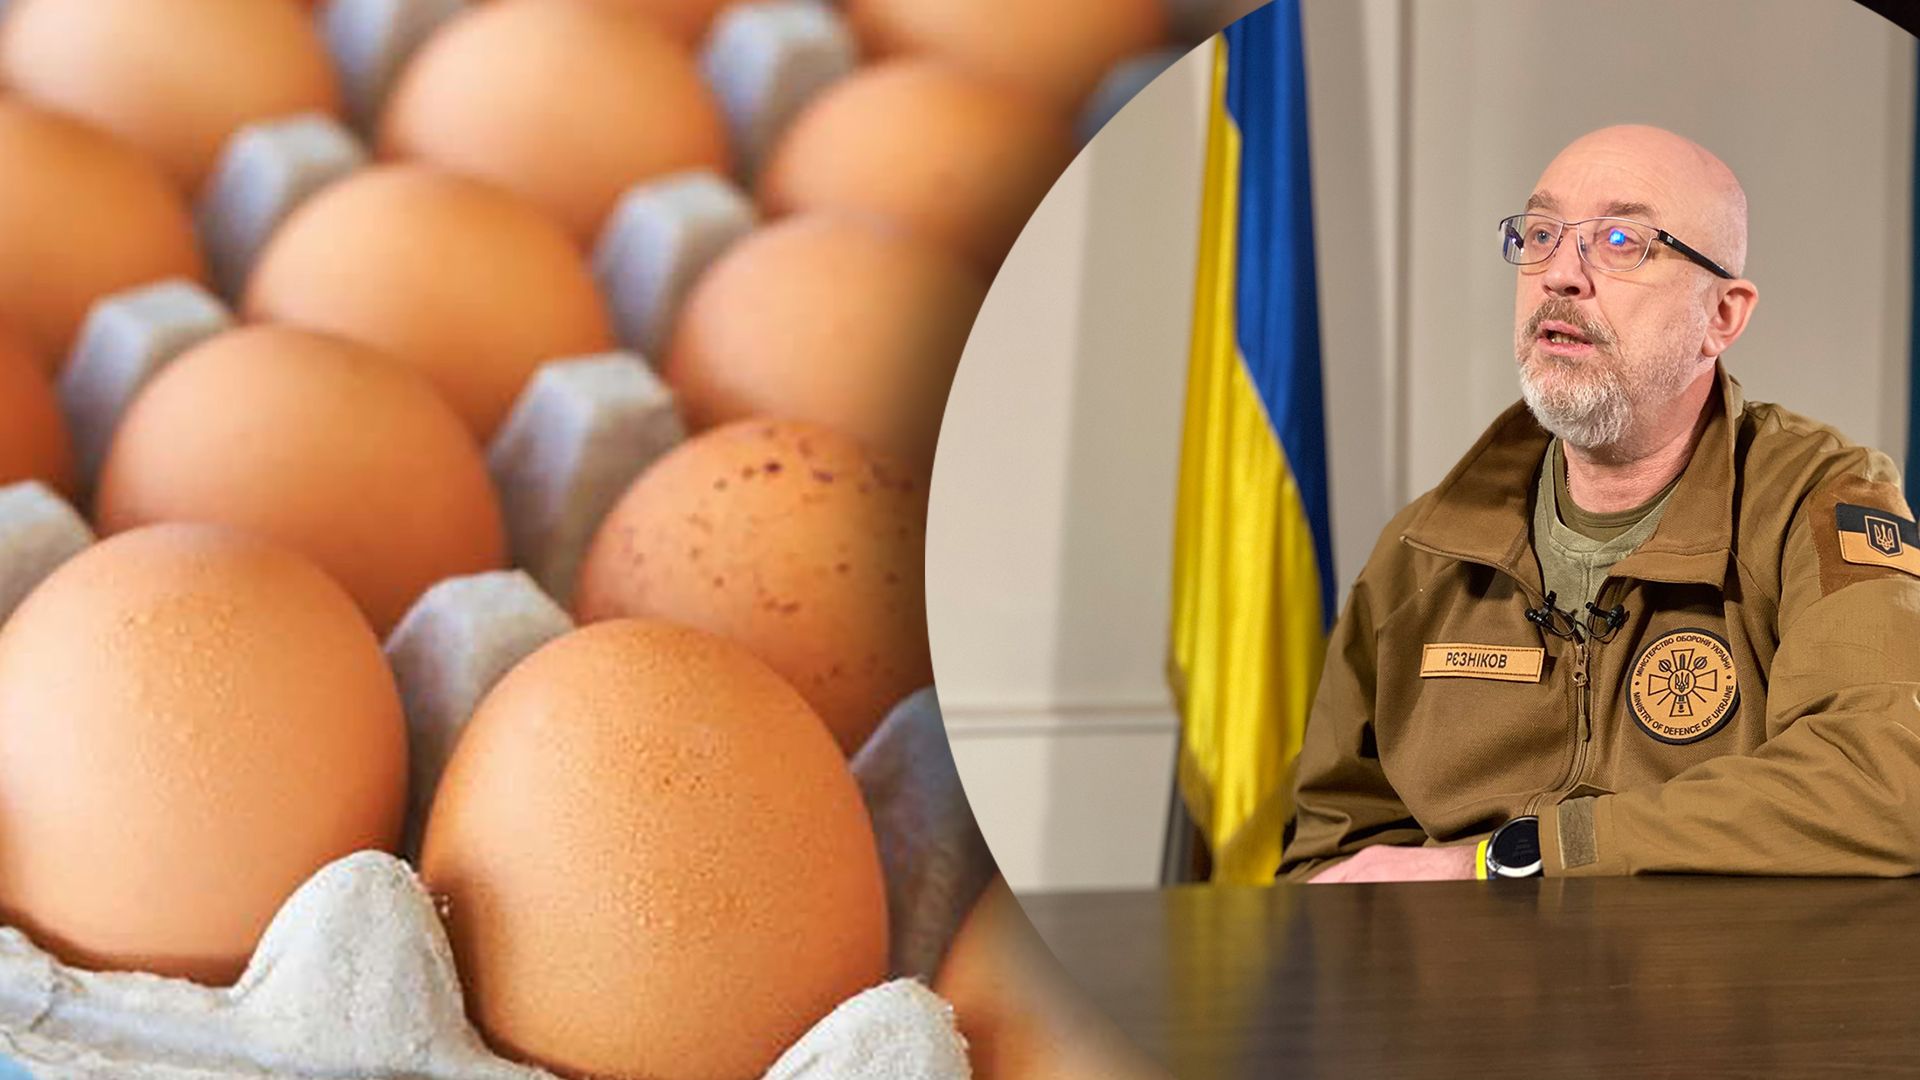 Яйца по 17 гривен - Резников отрицает это обвинение